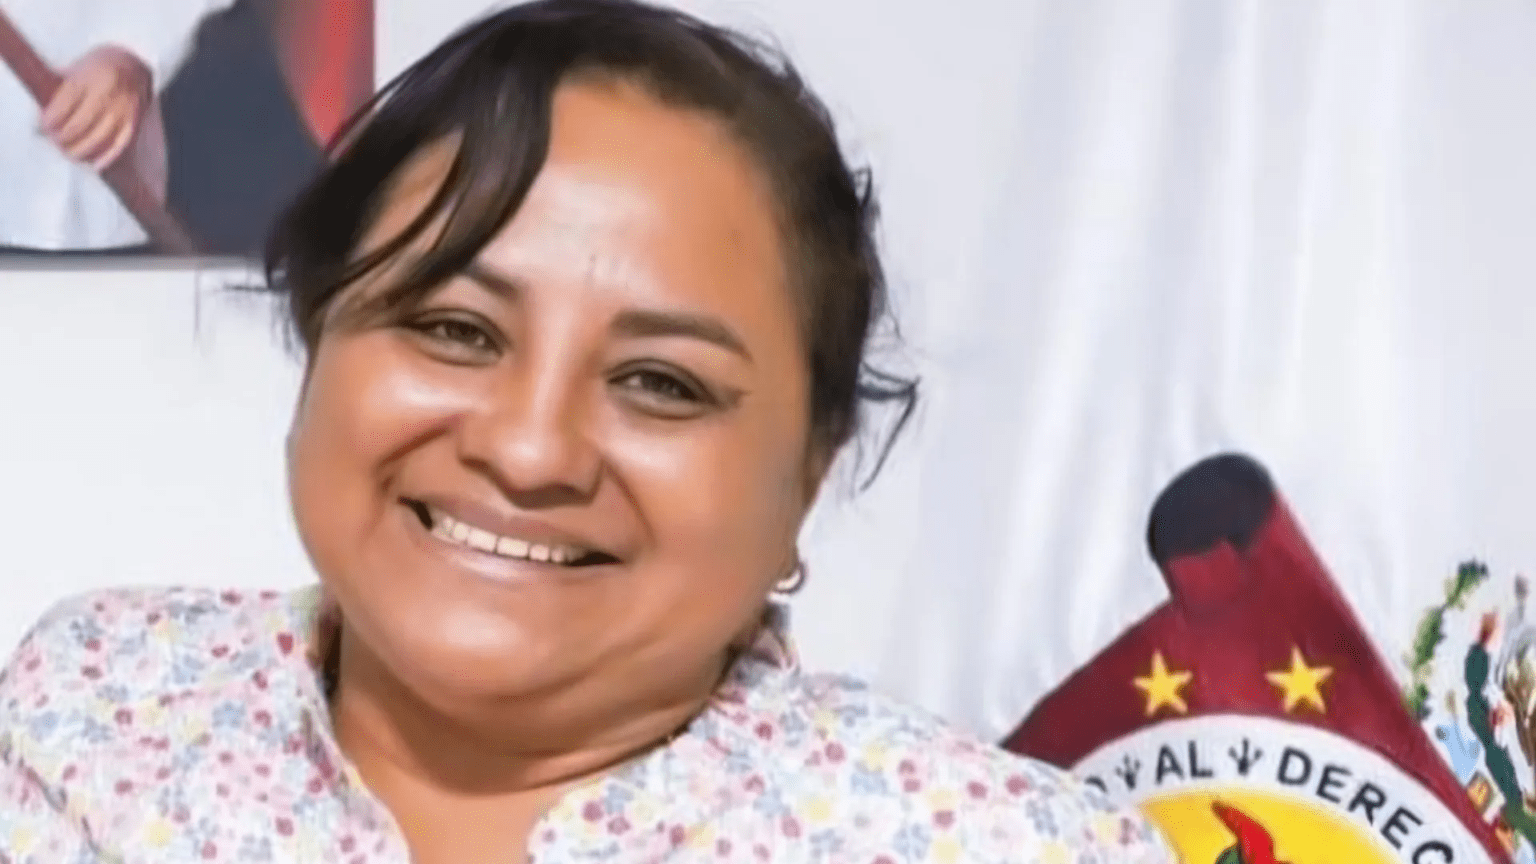 Fiscalía reporta desaparición de presidenta municipal y su esposo en sur de México